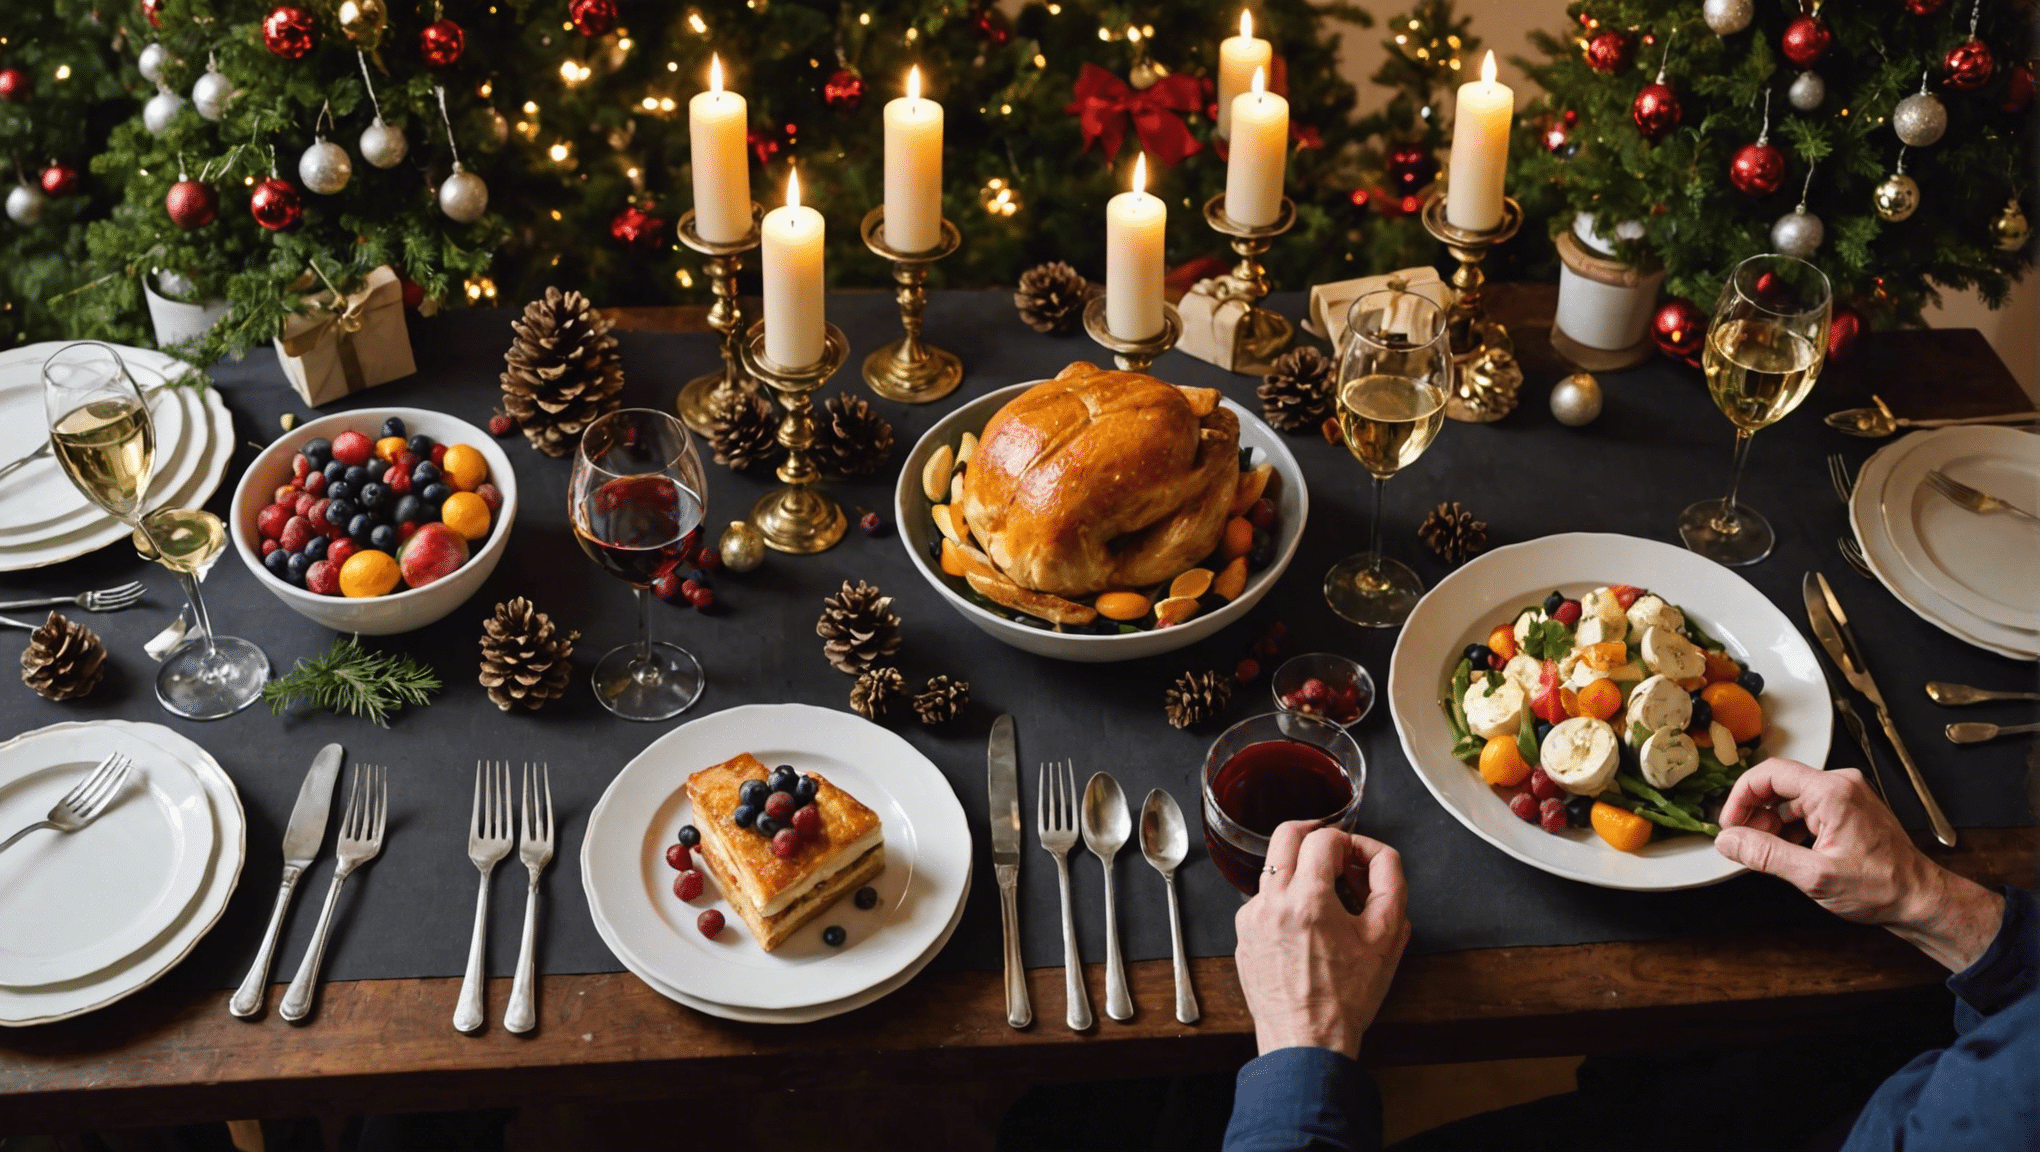 découvrez une sélection de délicieux plats à préparer pour célébrer les fêtes de fin d'année avec votre famille et vos proches. des recettes festives pour des moments inoubliables !